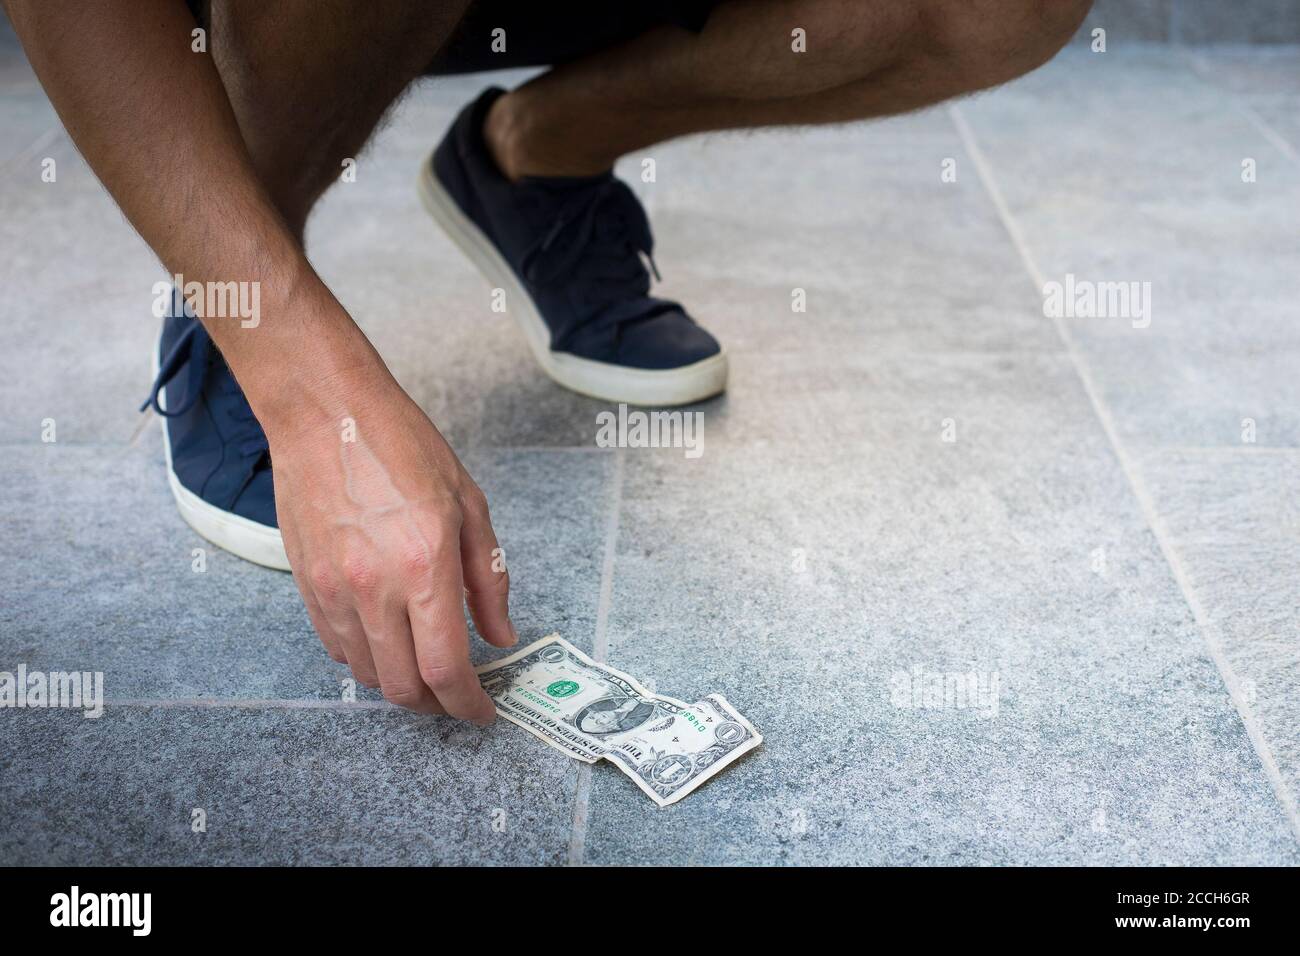 Homme anonyme, décontracté habillé, avec des baskets bleues, prenant un billet d'un dollar du sol. Banque D'Images